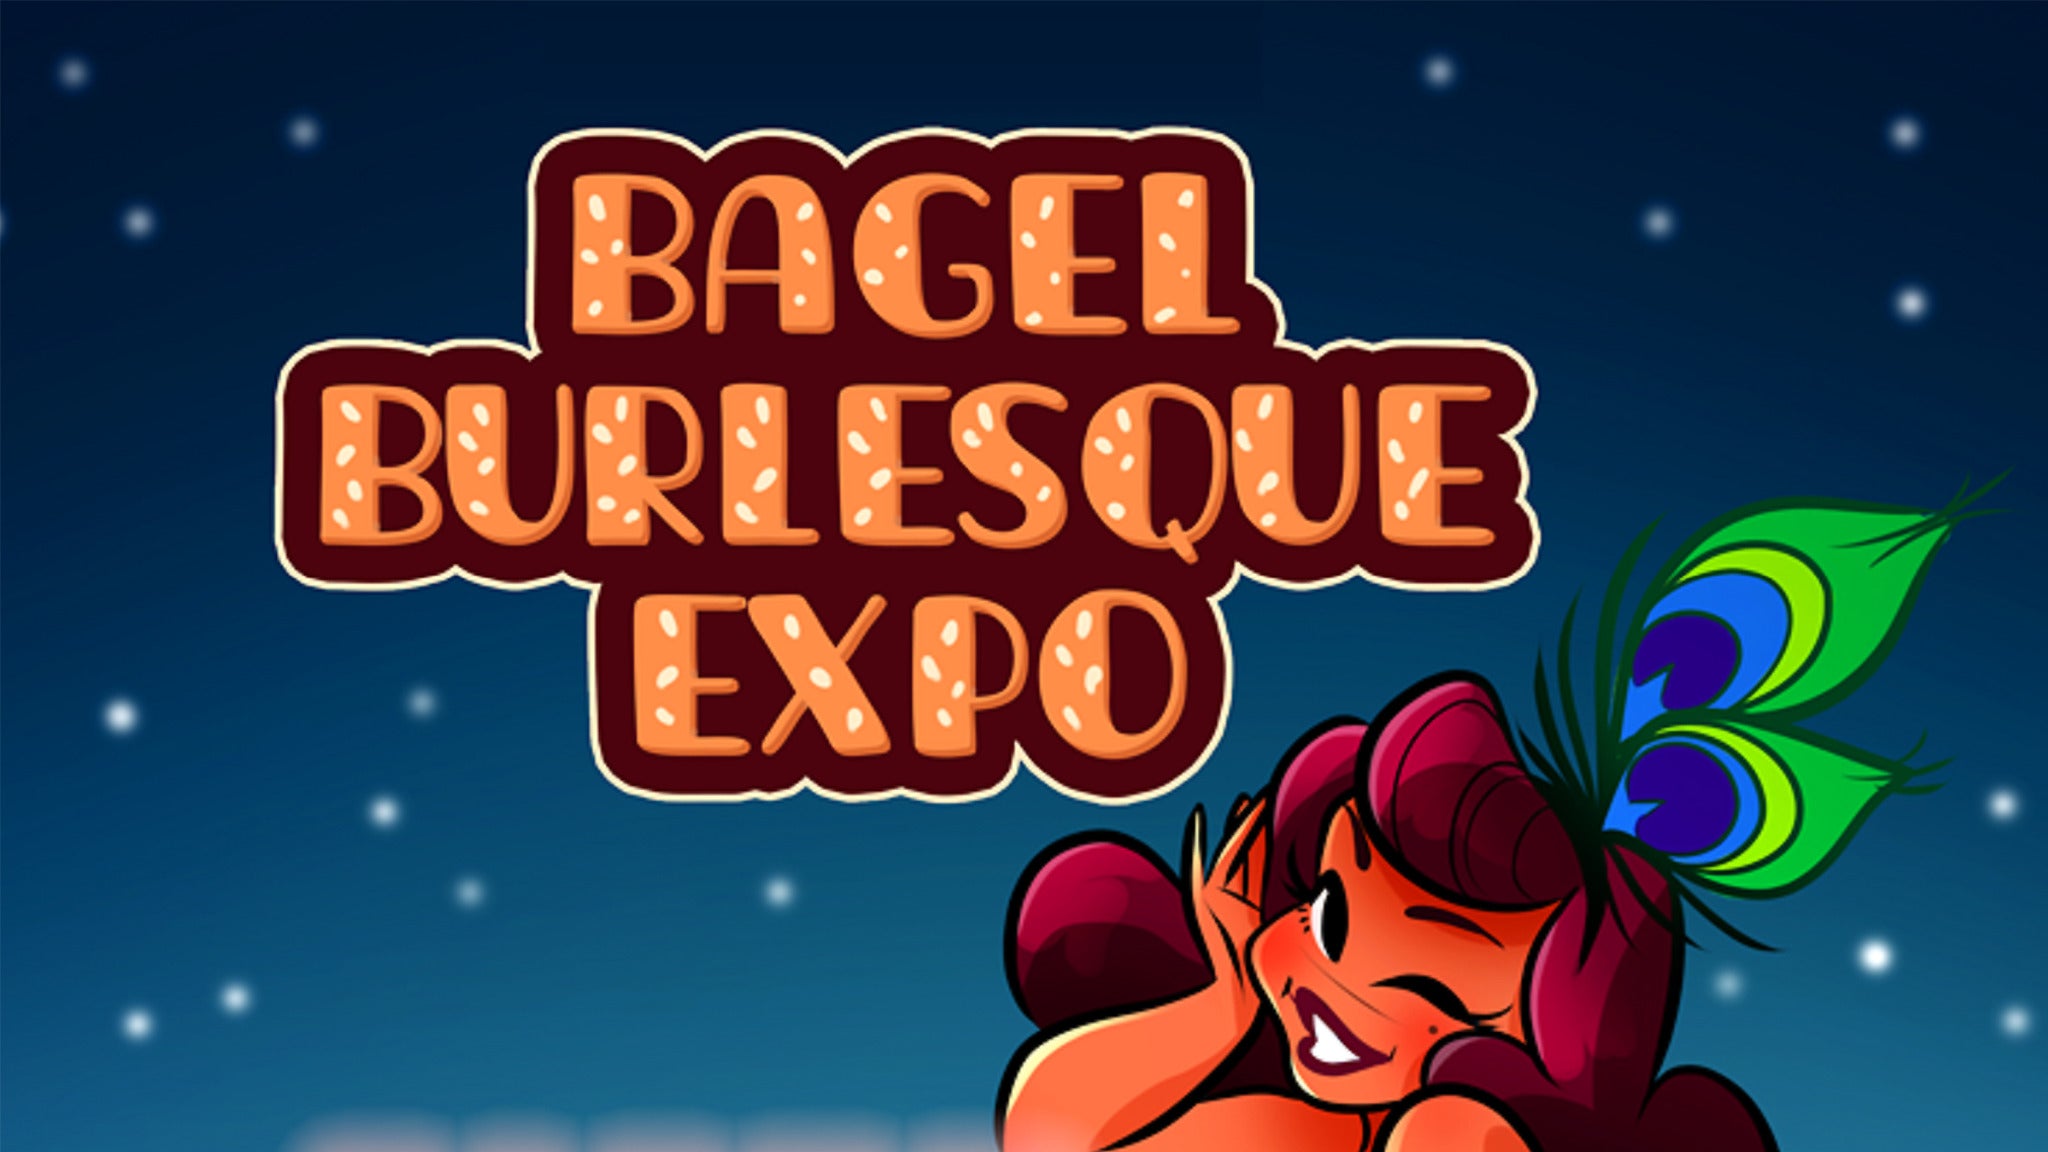 Bagel Burlesque Expo presale information on freepresalepasswords.com